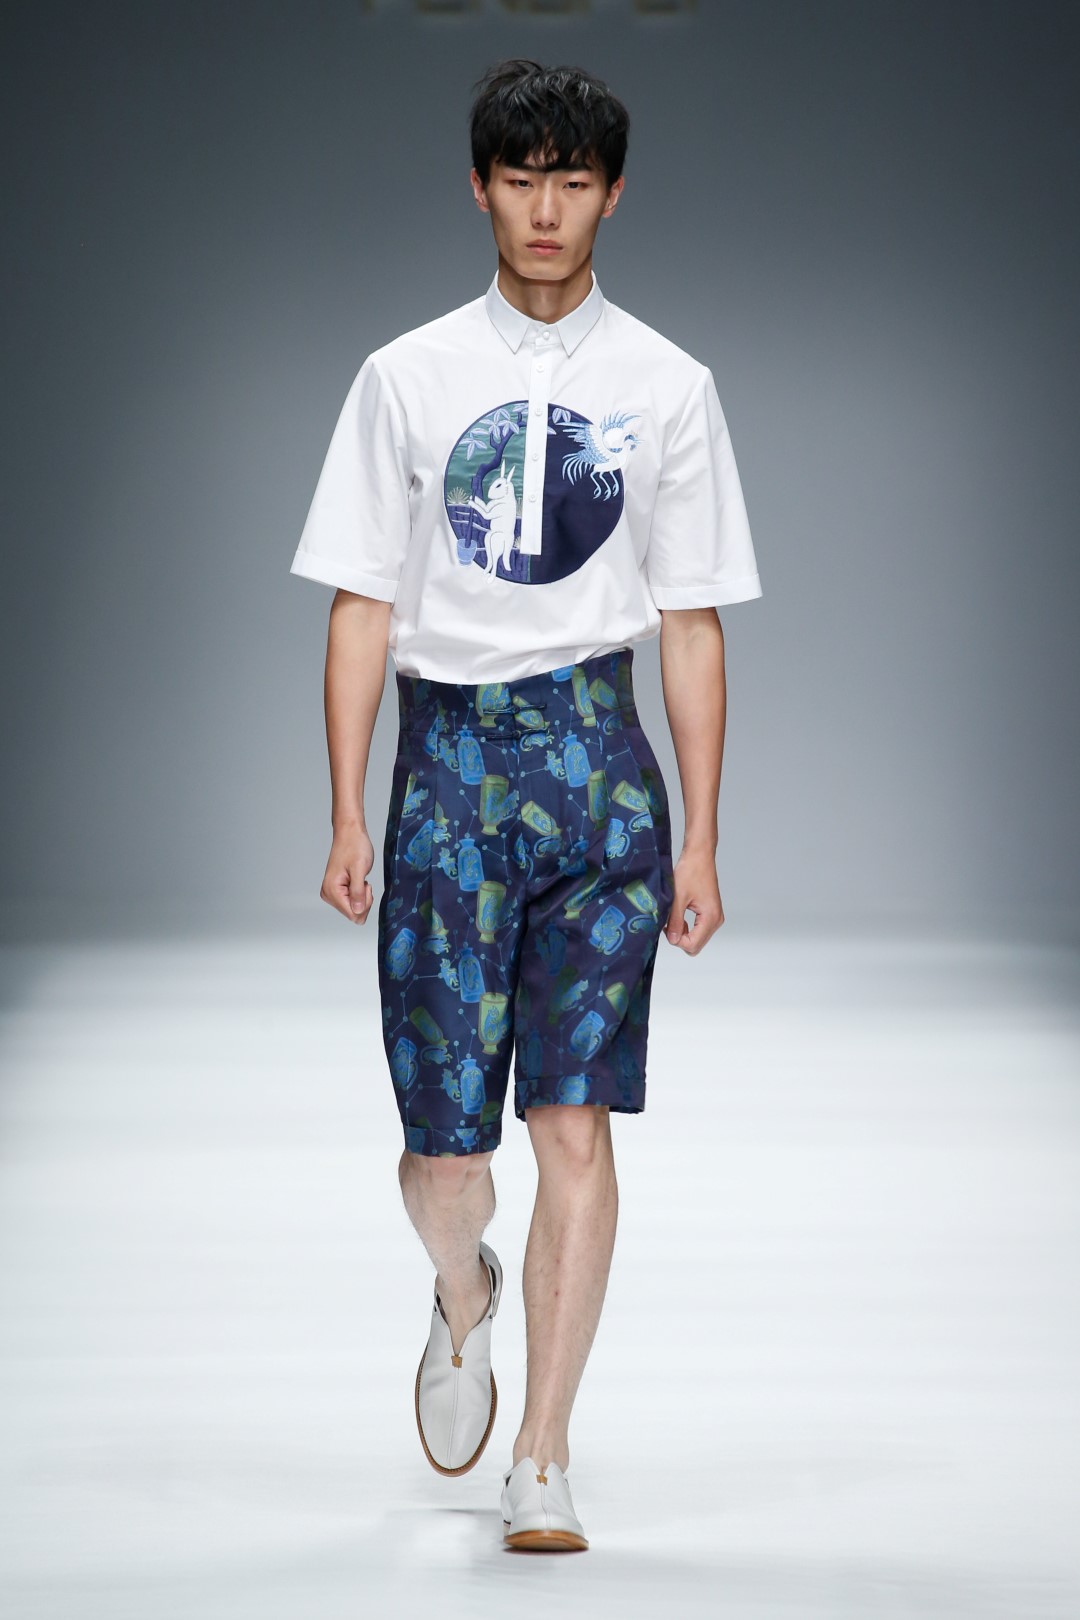 Tendenze moda uomo primavera estate 2016: i motivi regali di Fengfei Zeng, le foto